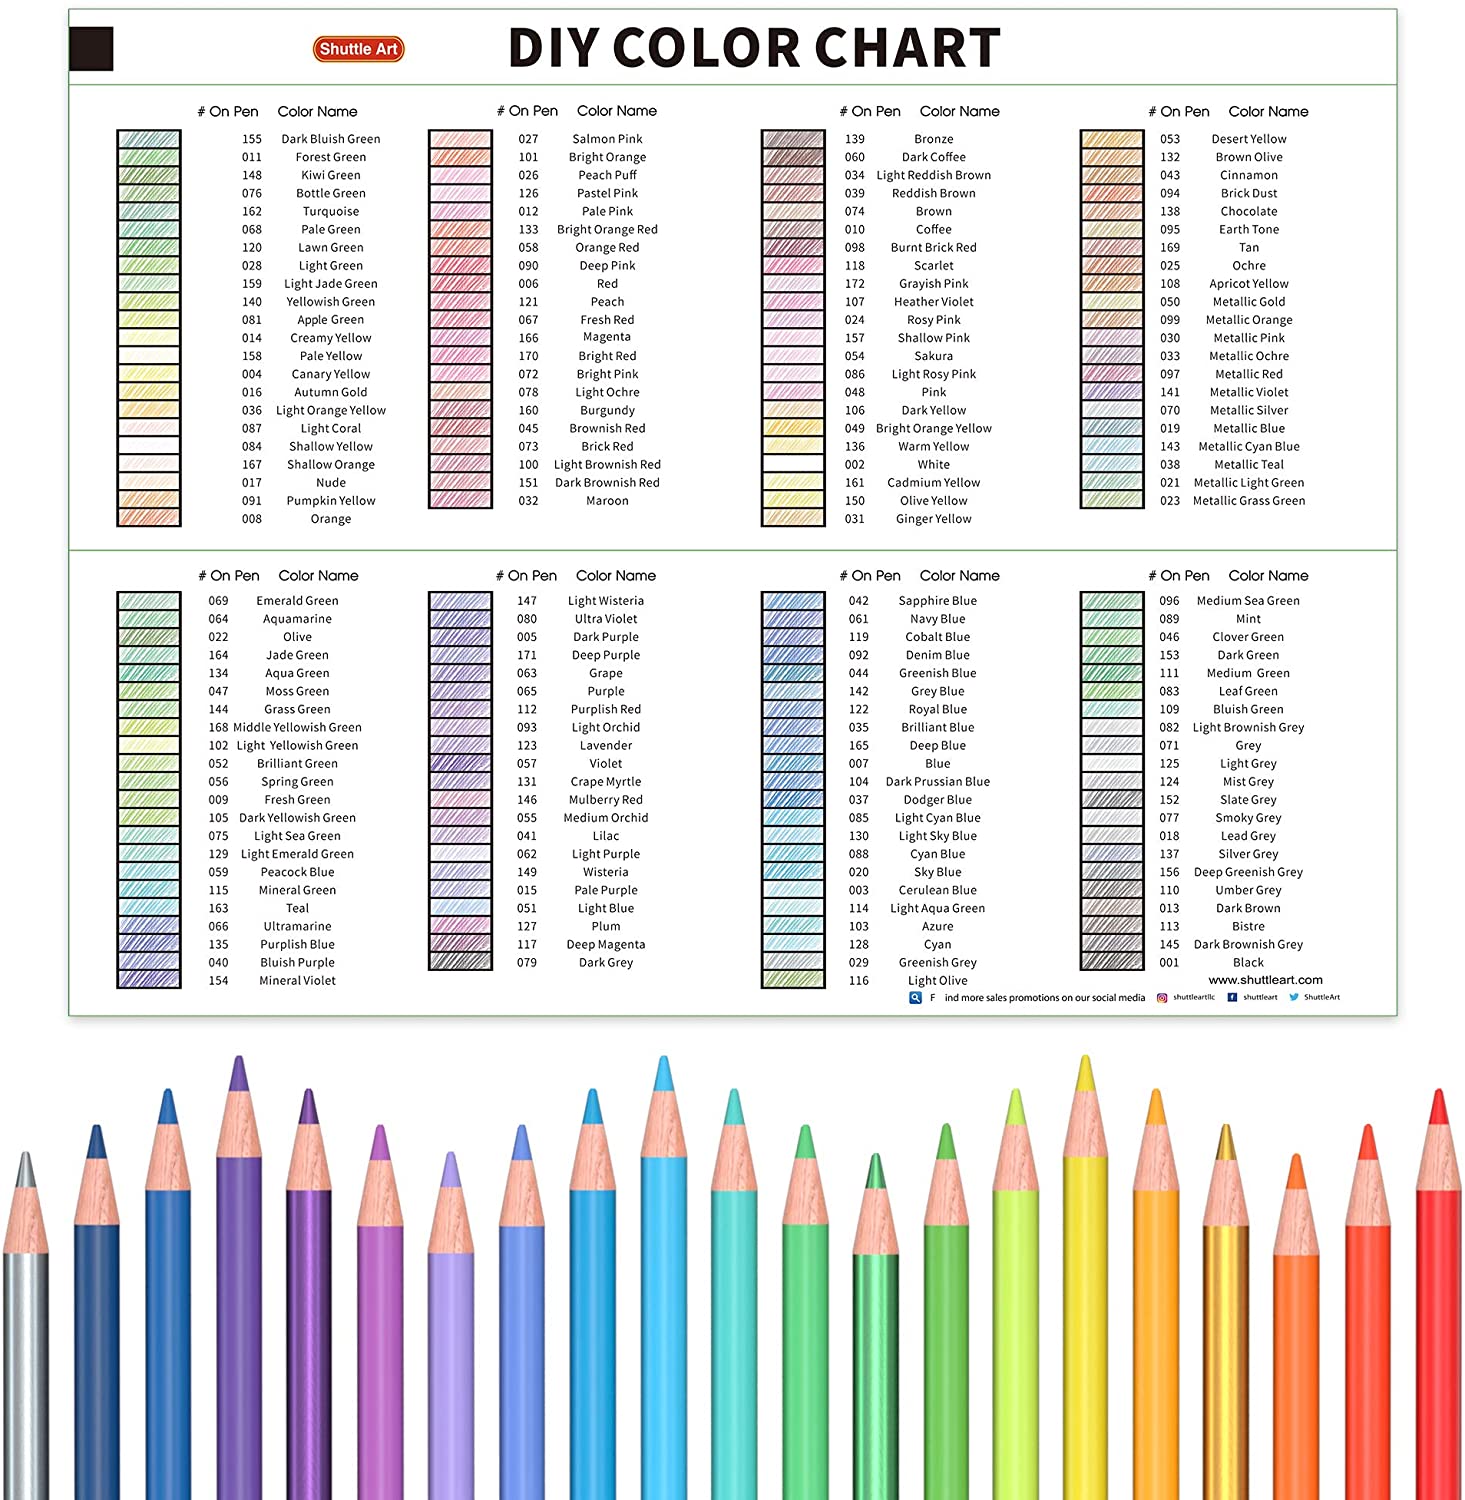 Color chart coloring book â shuttle art